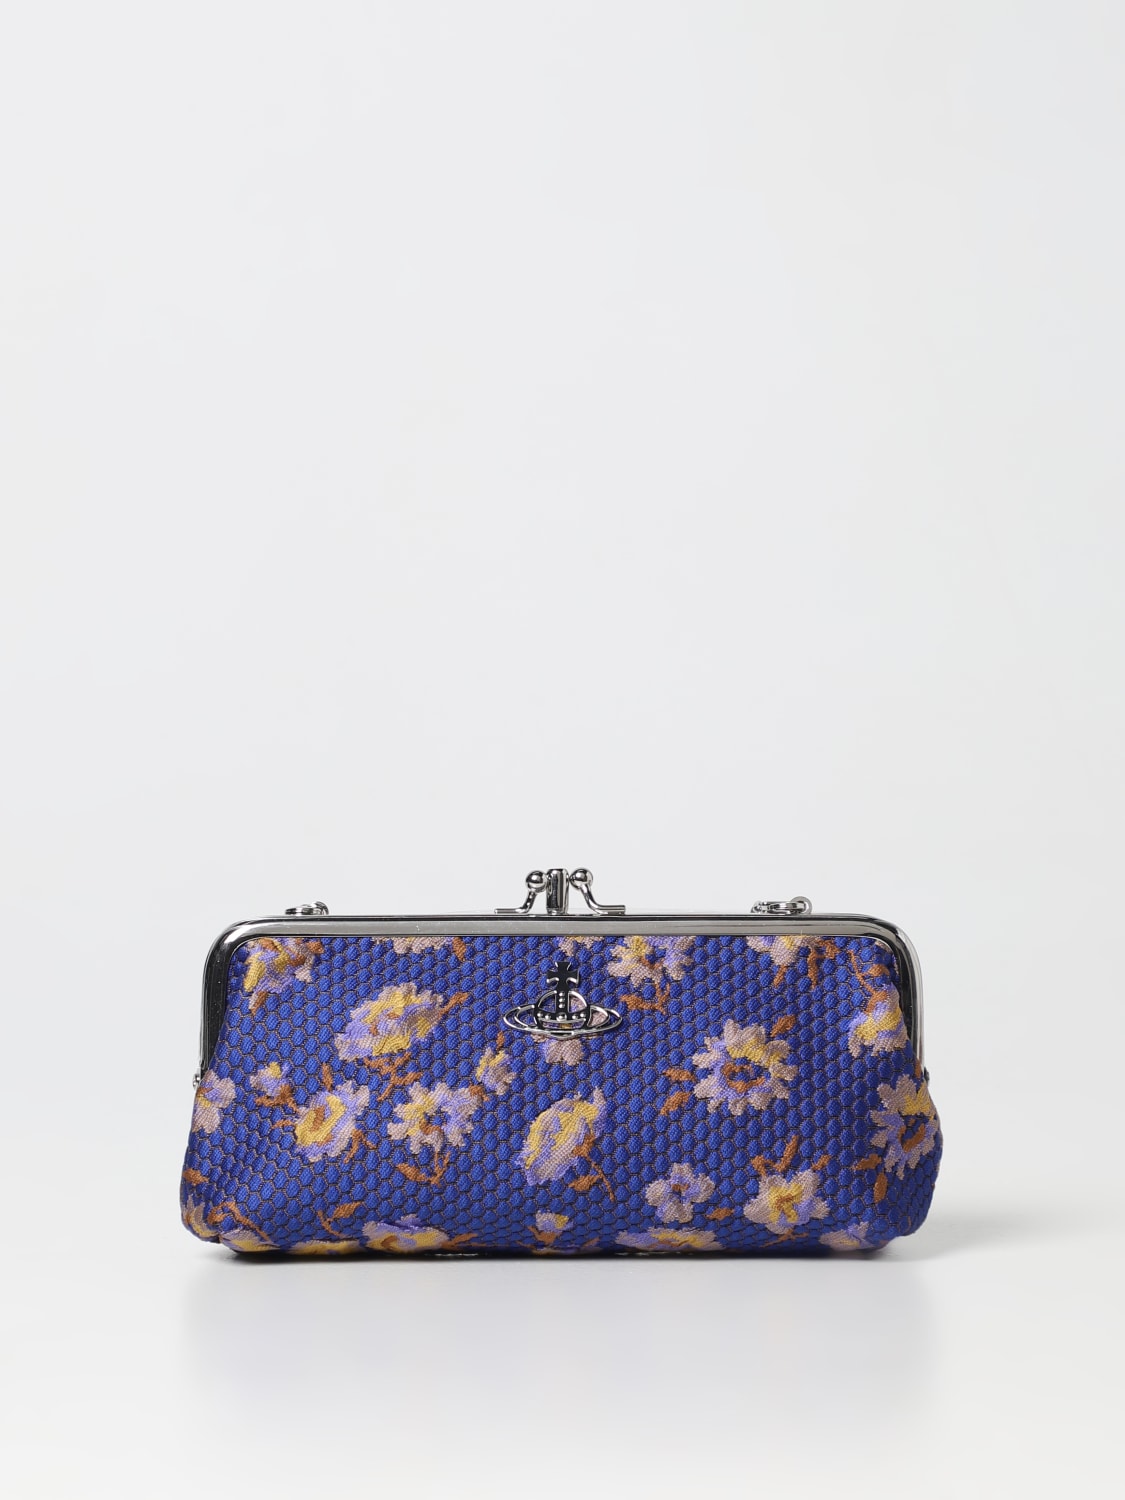 Vivian Louis Vuitton Handbags for Women - Vestiaire Collective